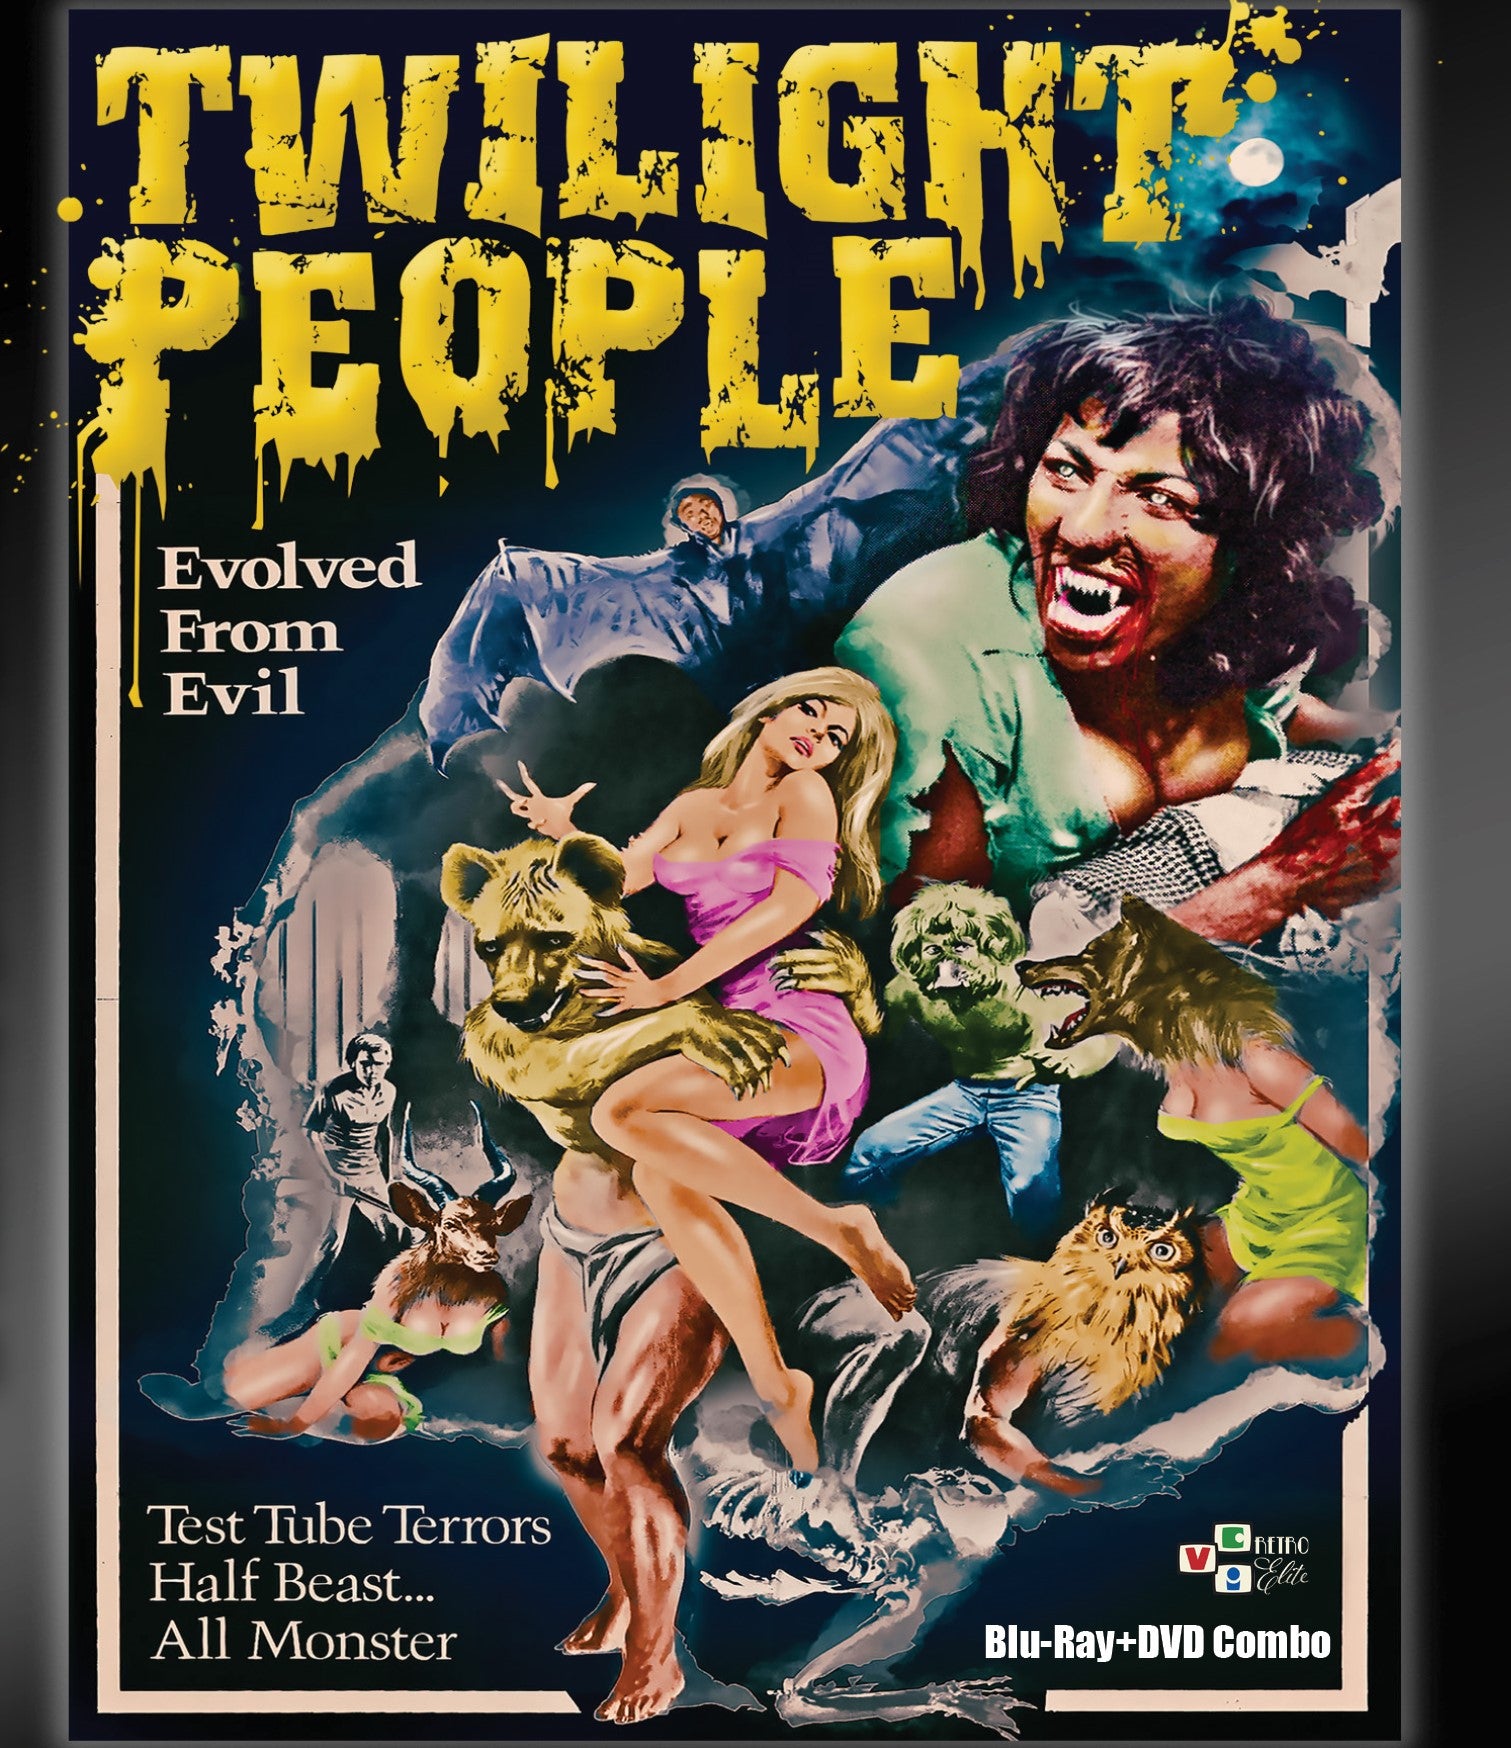 THE TWILIGHT PEOPLE BLU-RAY/DVD